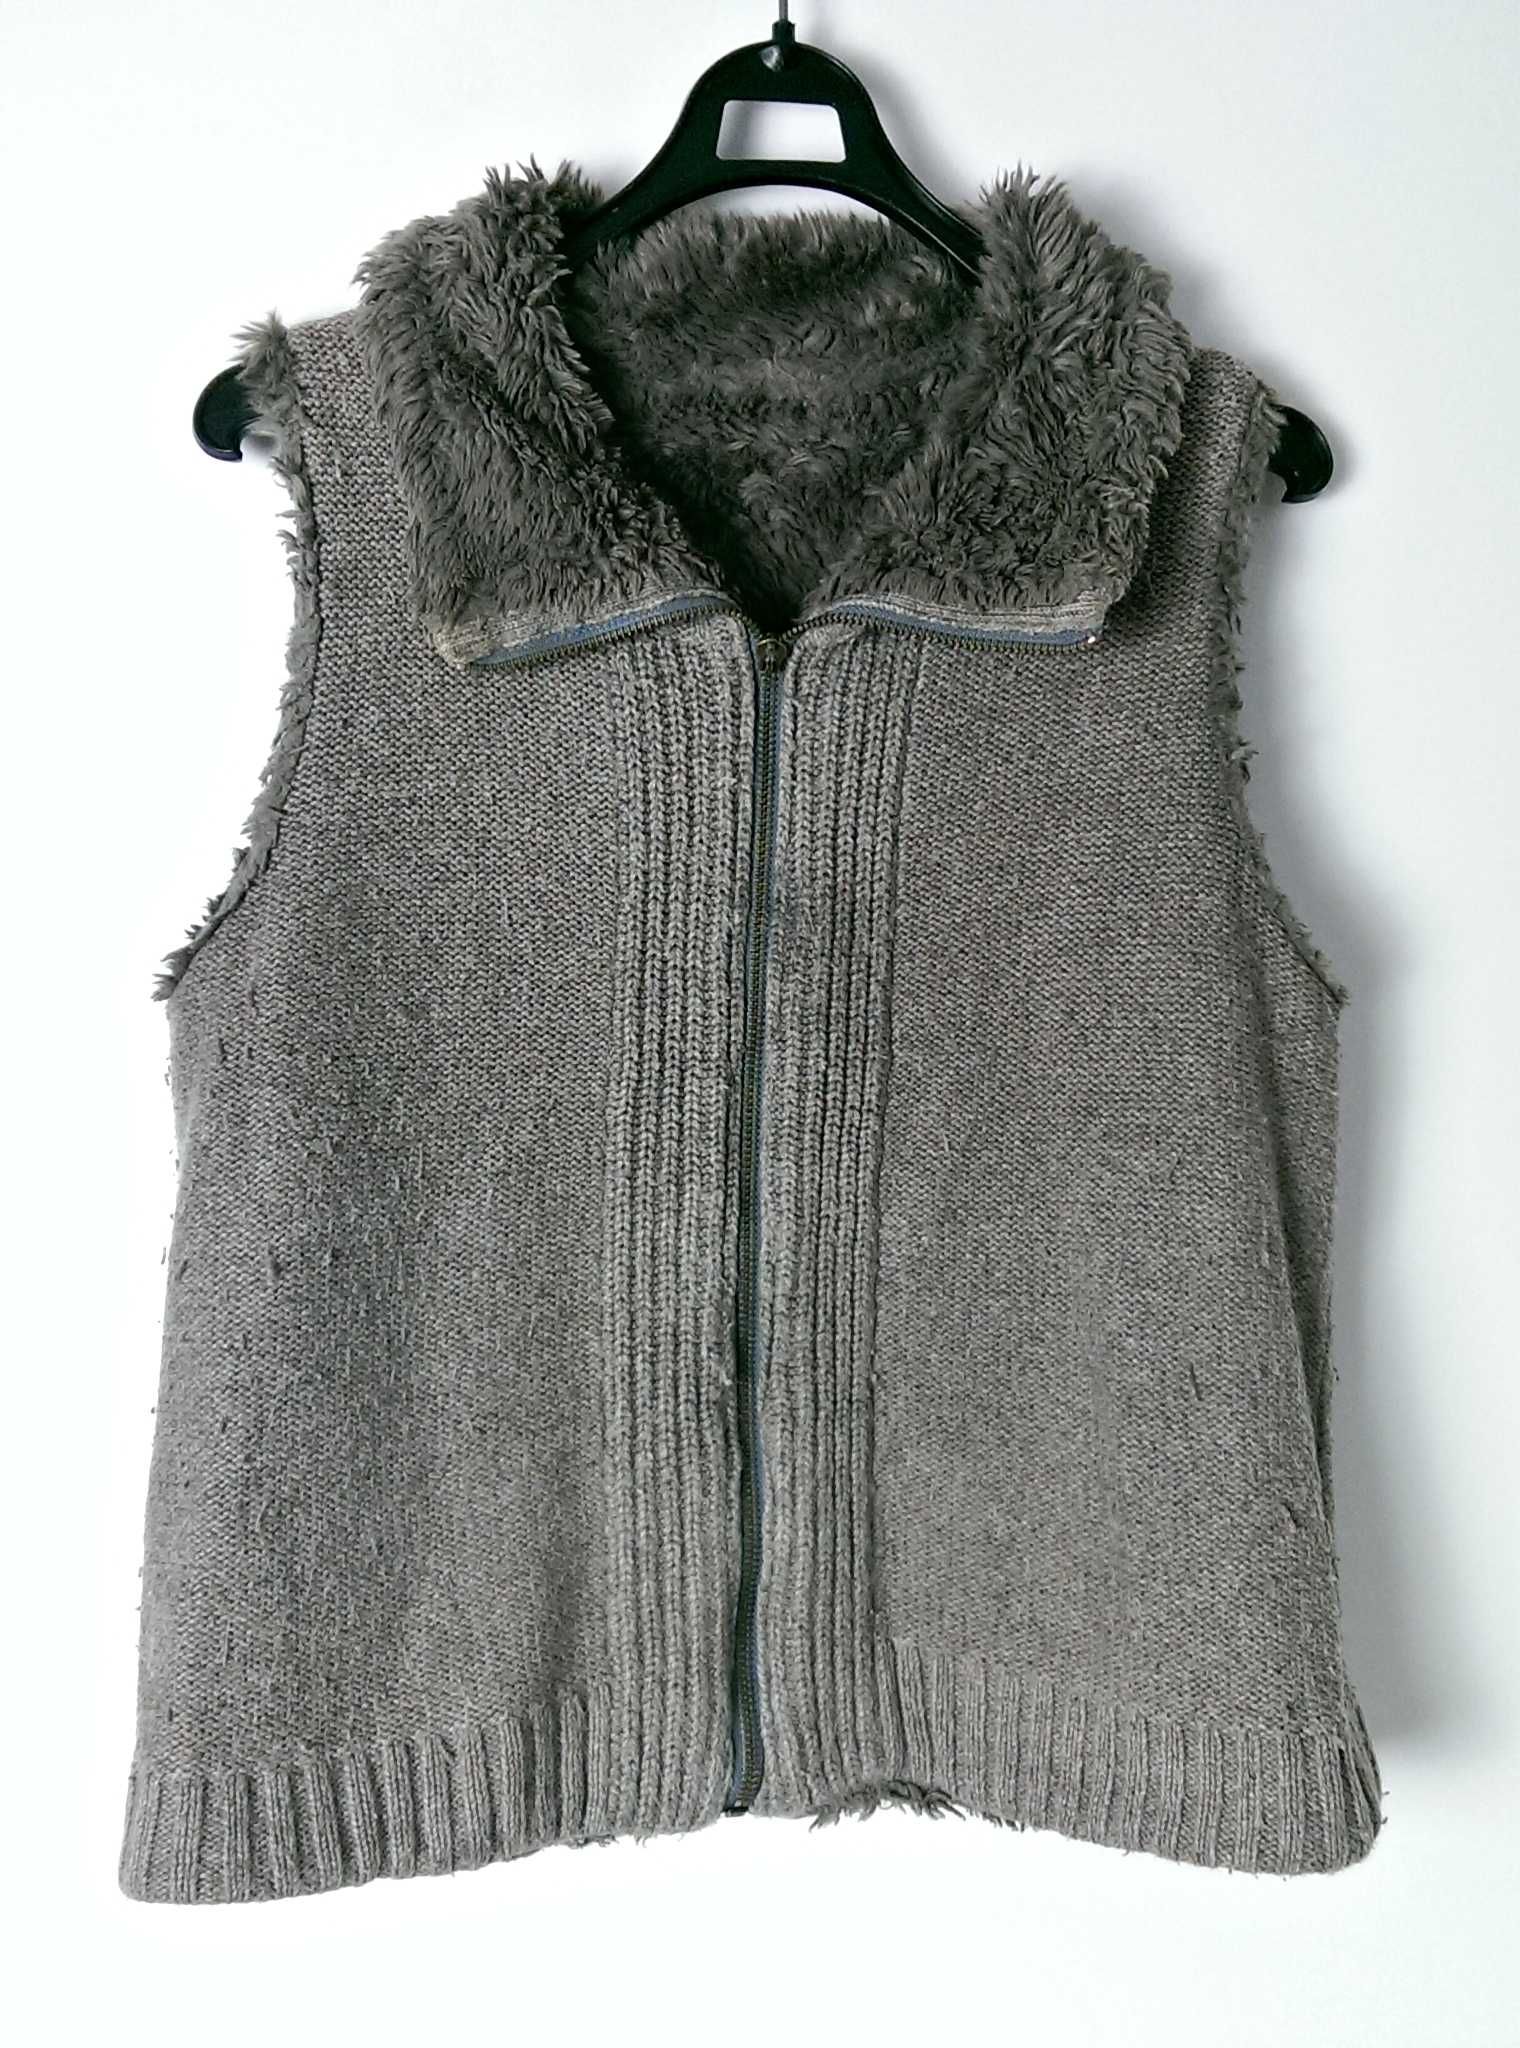 Kamizelka futerko sweterek bez rękawów bezrękawnik ciepła gruba szara